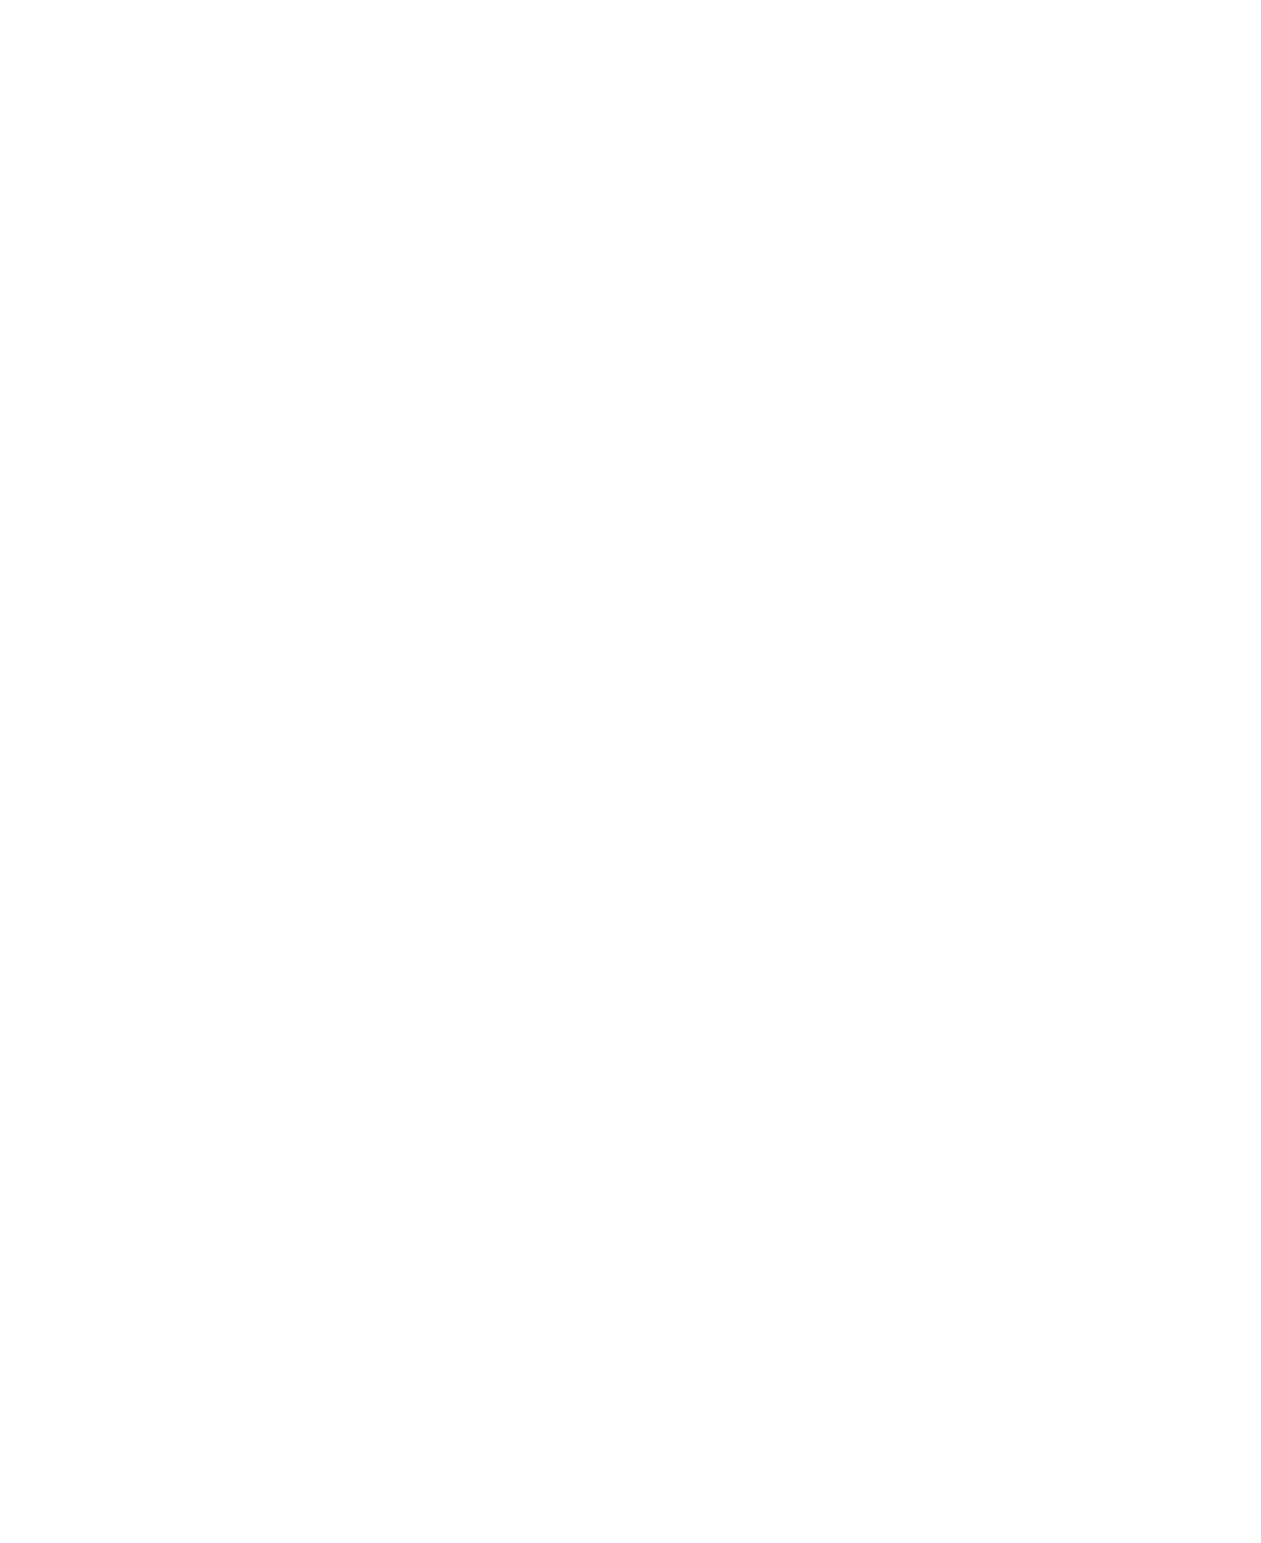 Synlait Milk logo pour fonds sombres (PNG transparent)